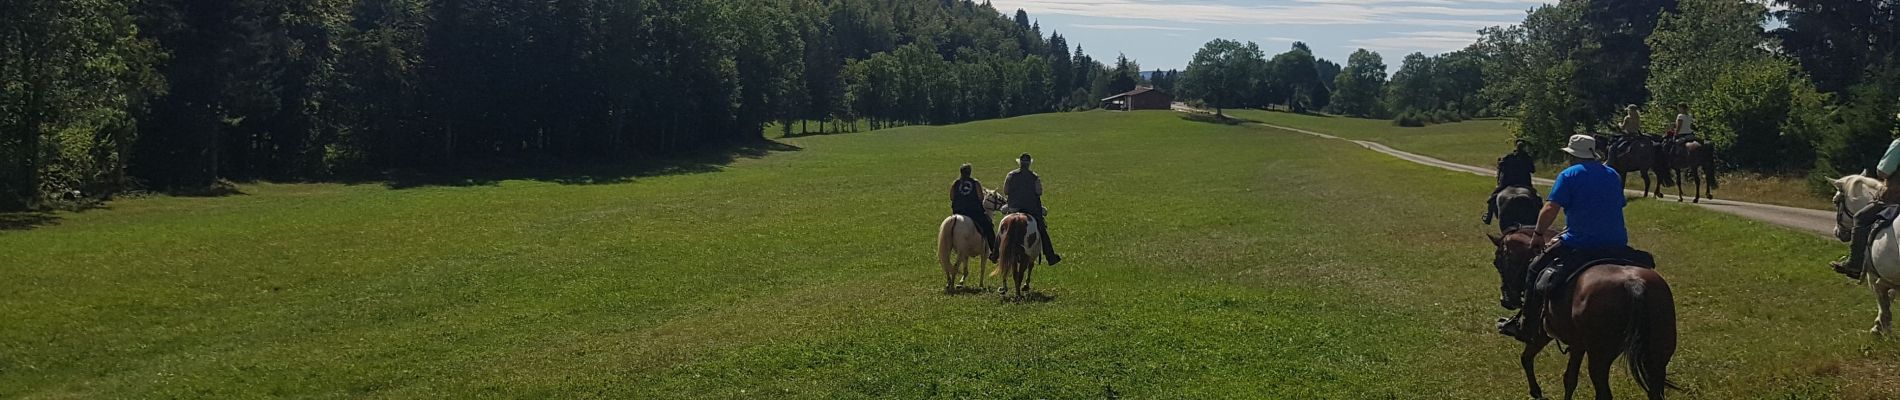 Percorso Equitazione Longchaumois - rando Jura 2020 route j3 - Photo